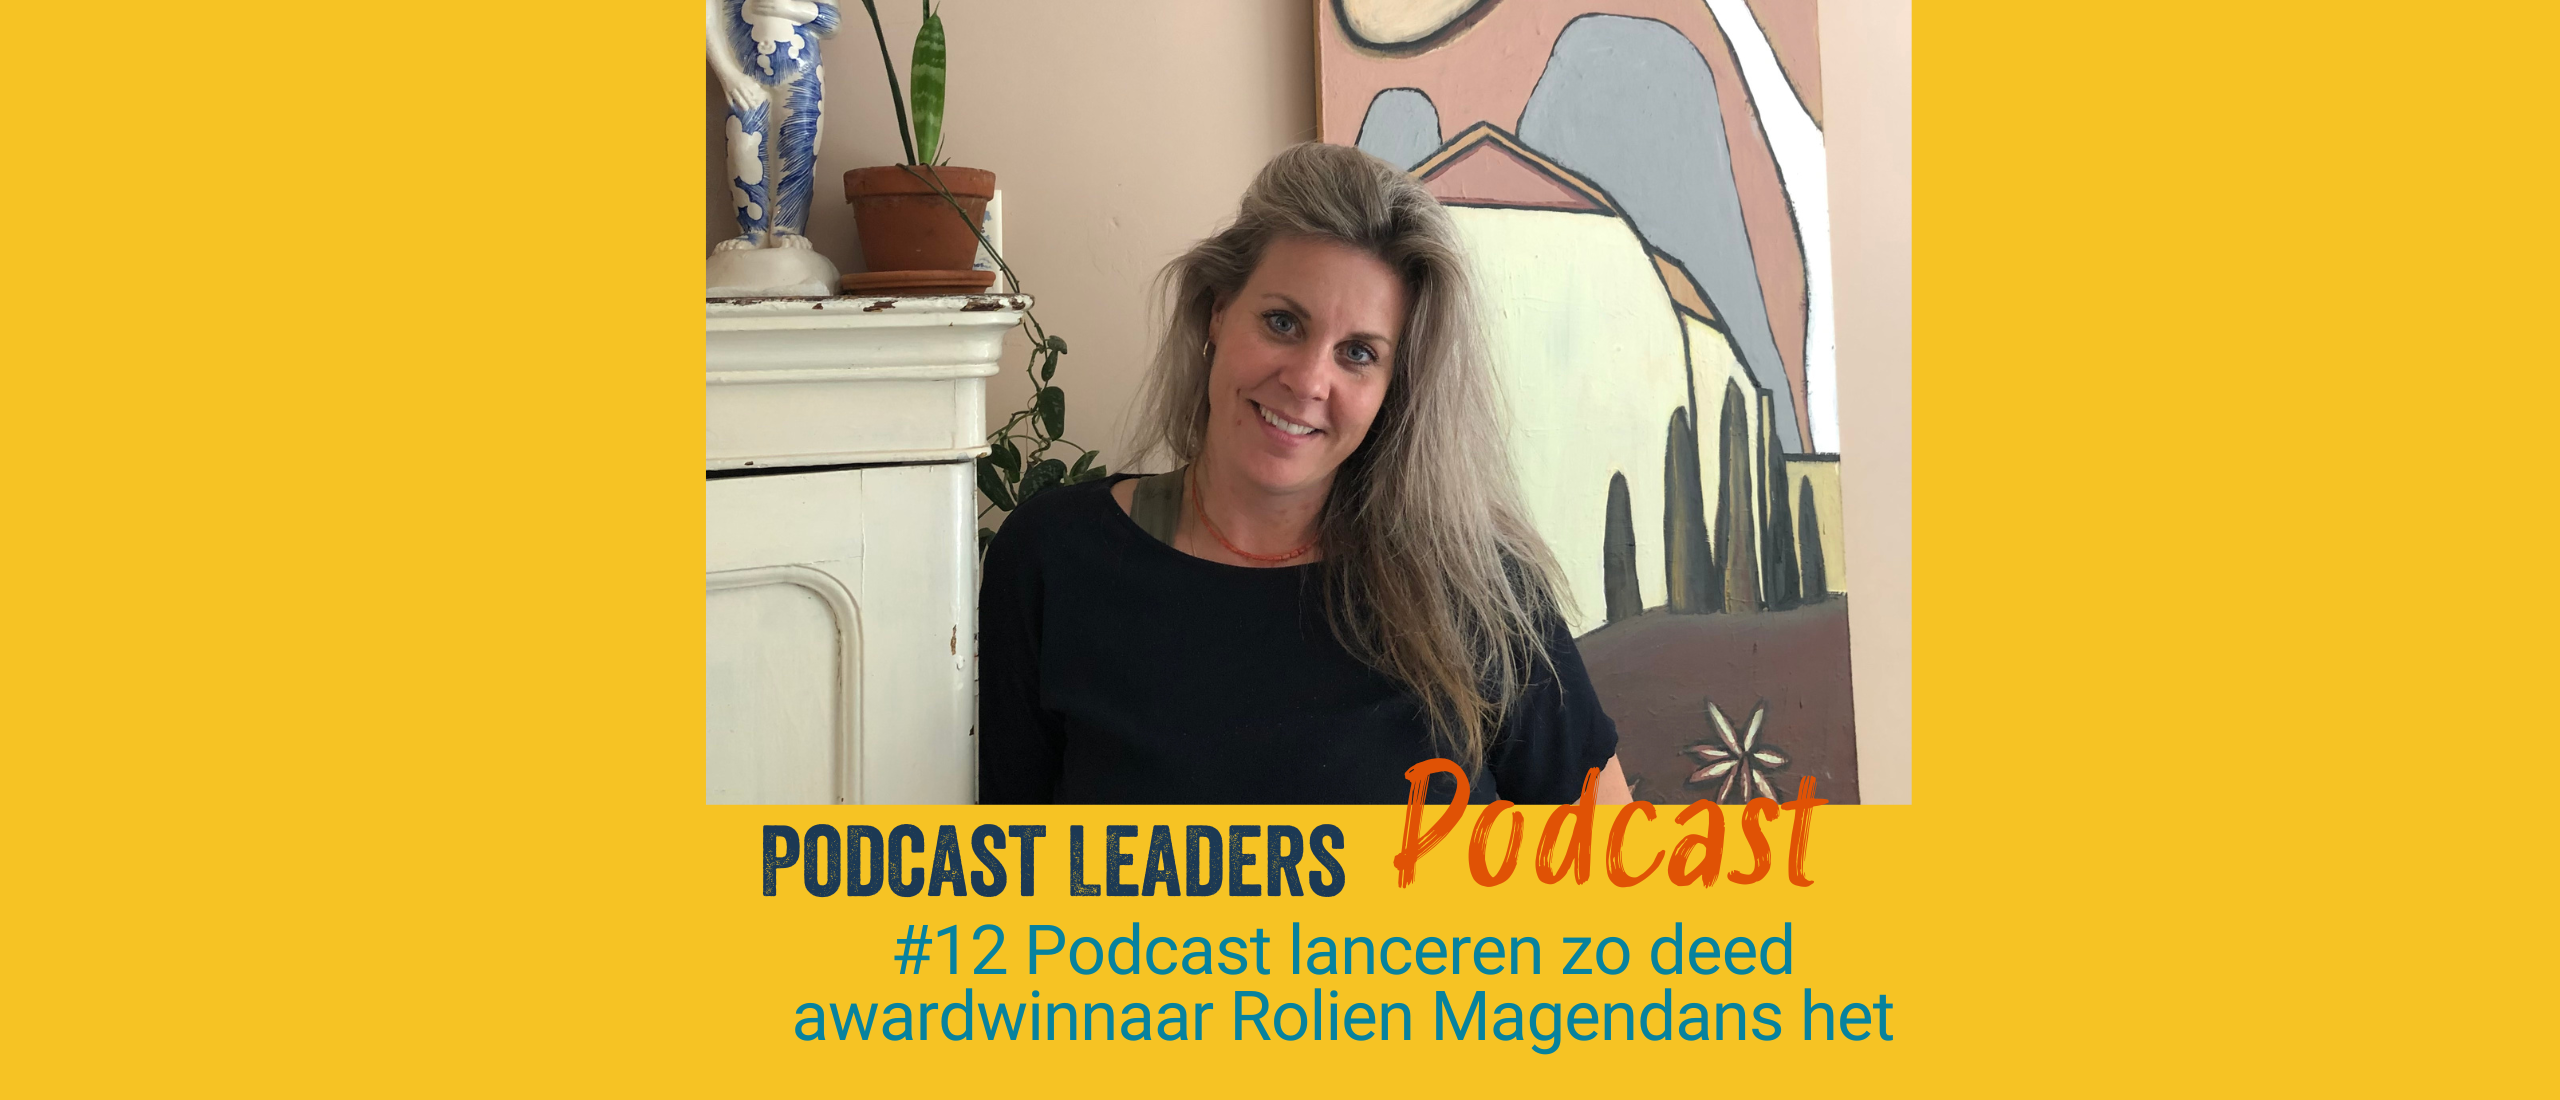 podcast lanceren met Rolien Magendans